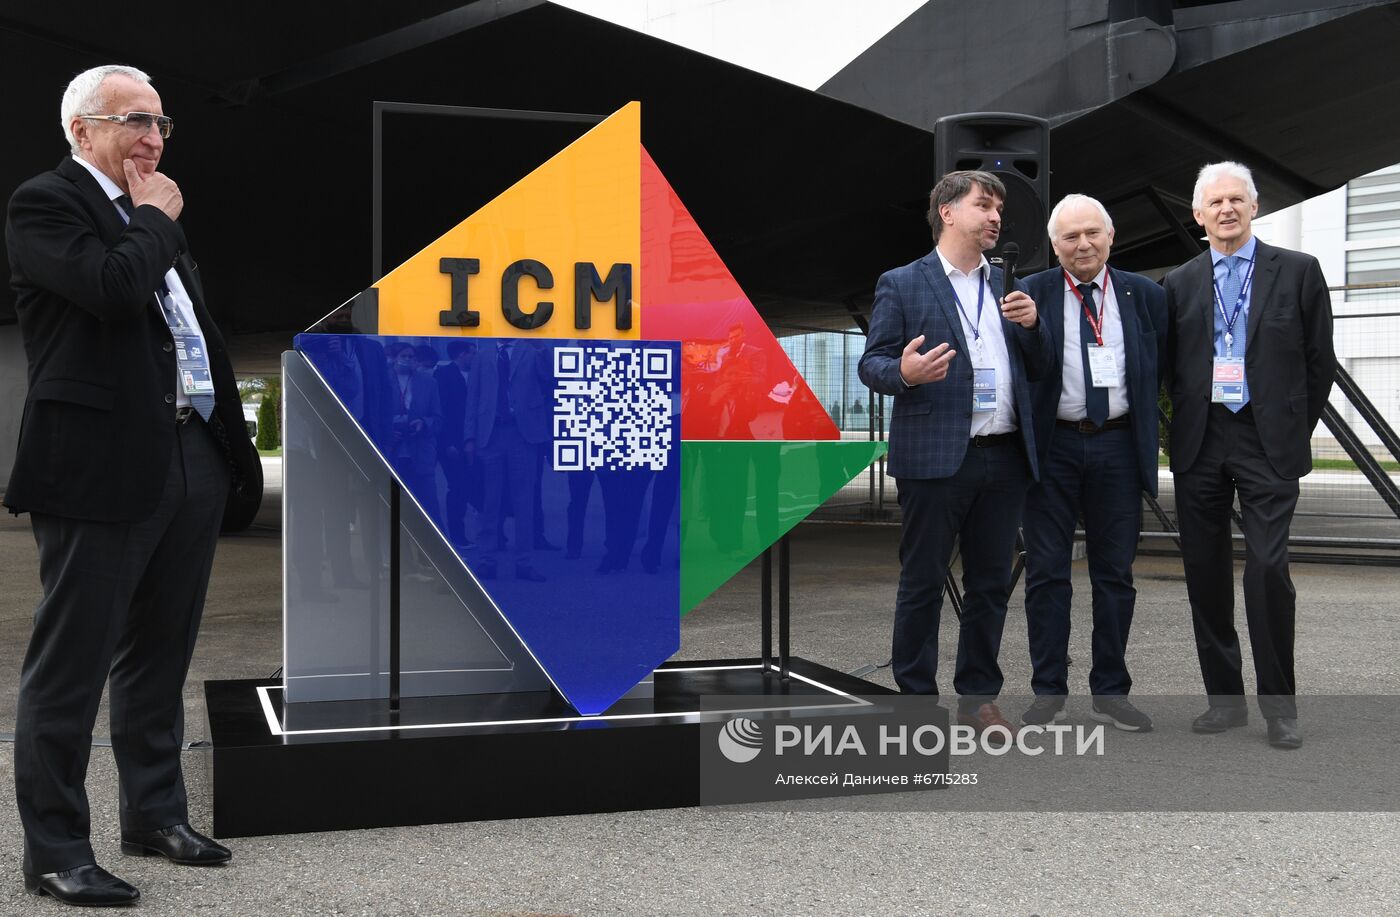 Церемония открытия арт-объекта "Теорема Пифагора" в рамках Конгресса математиков 2022